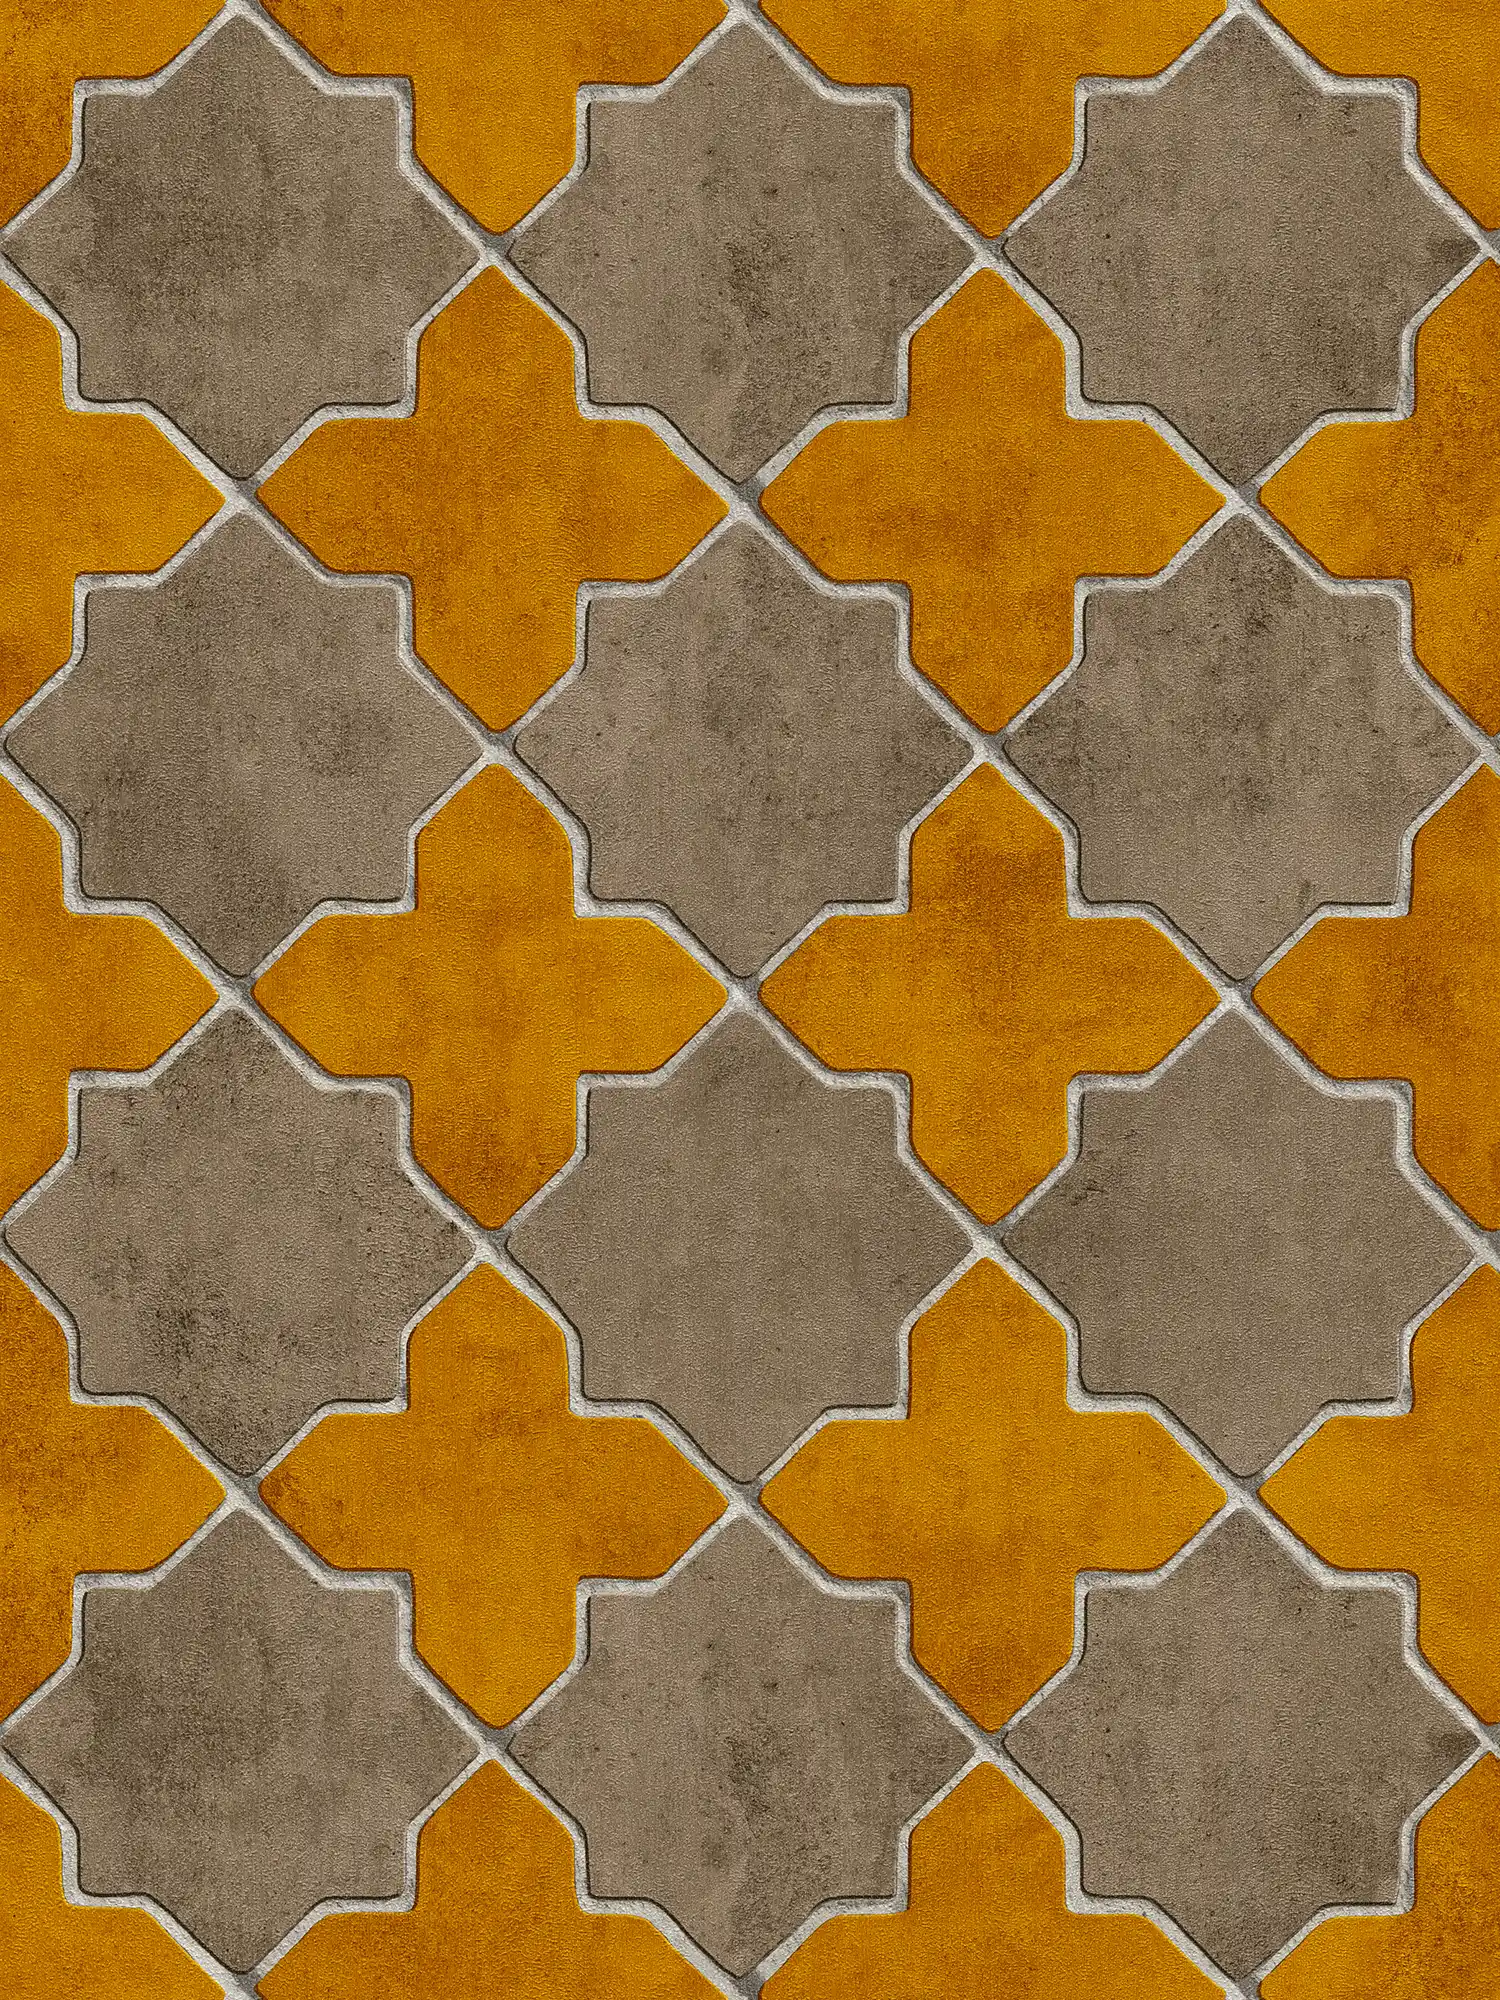 Tegellook behang marokkaans - geel, beige, crème
